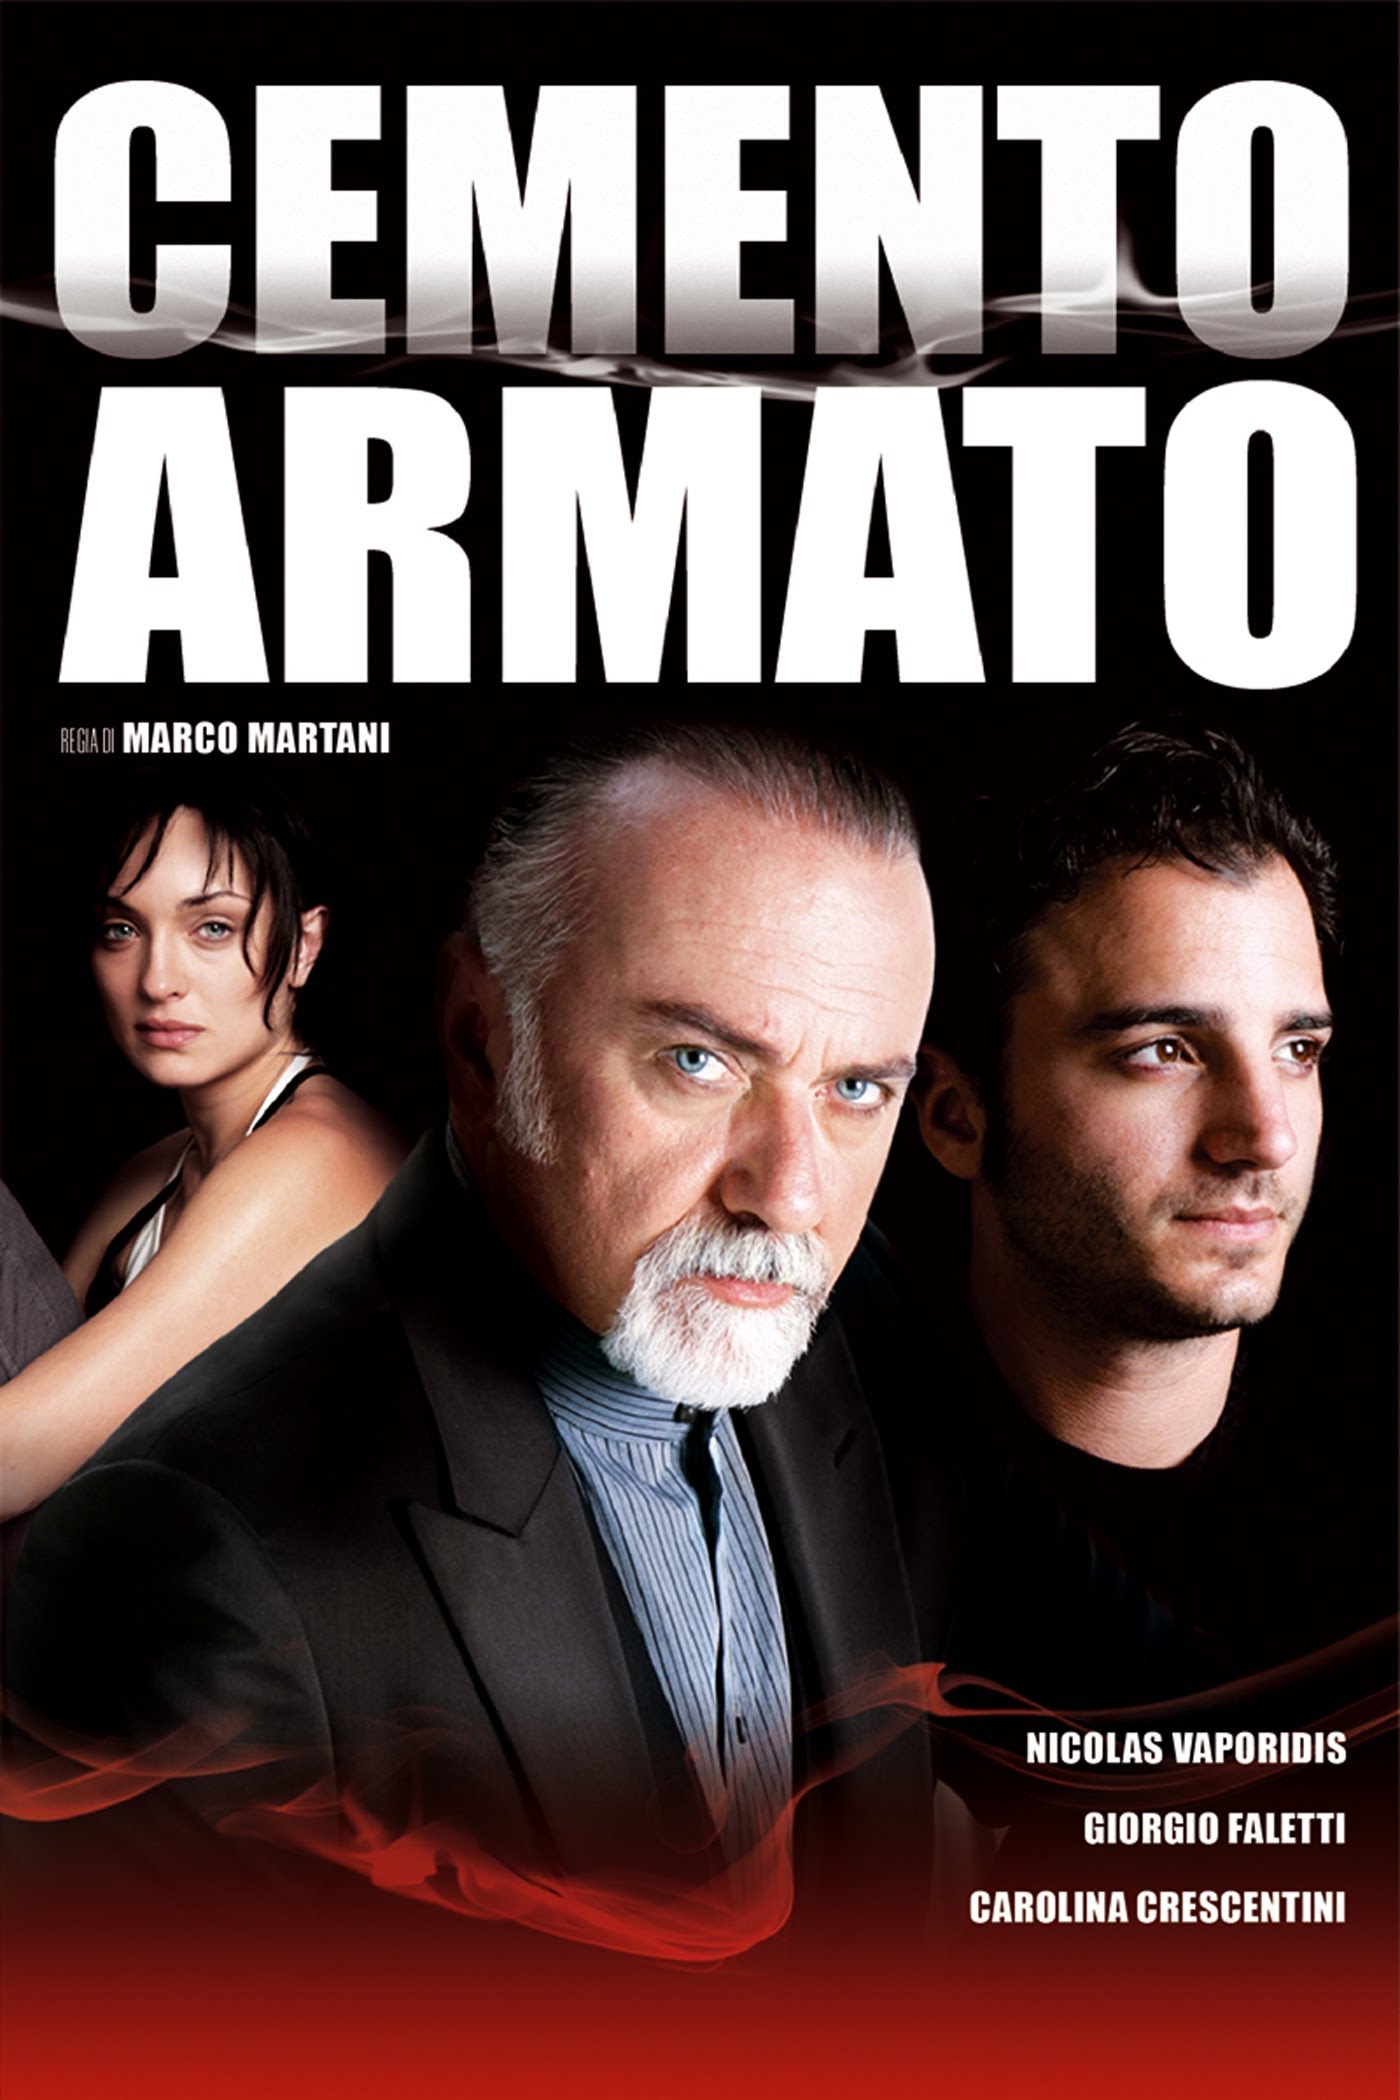 Cemento Armato [HD] (2007)